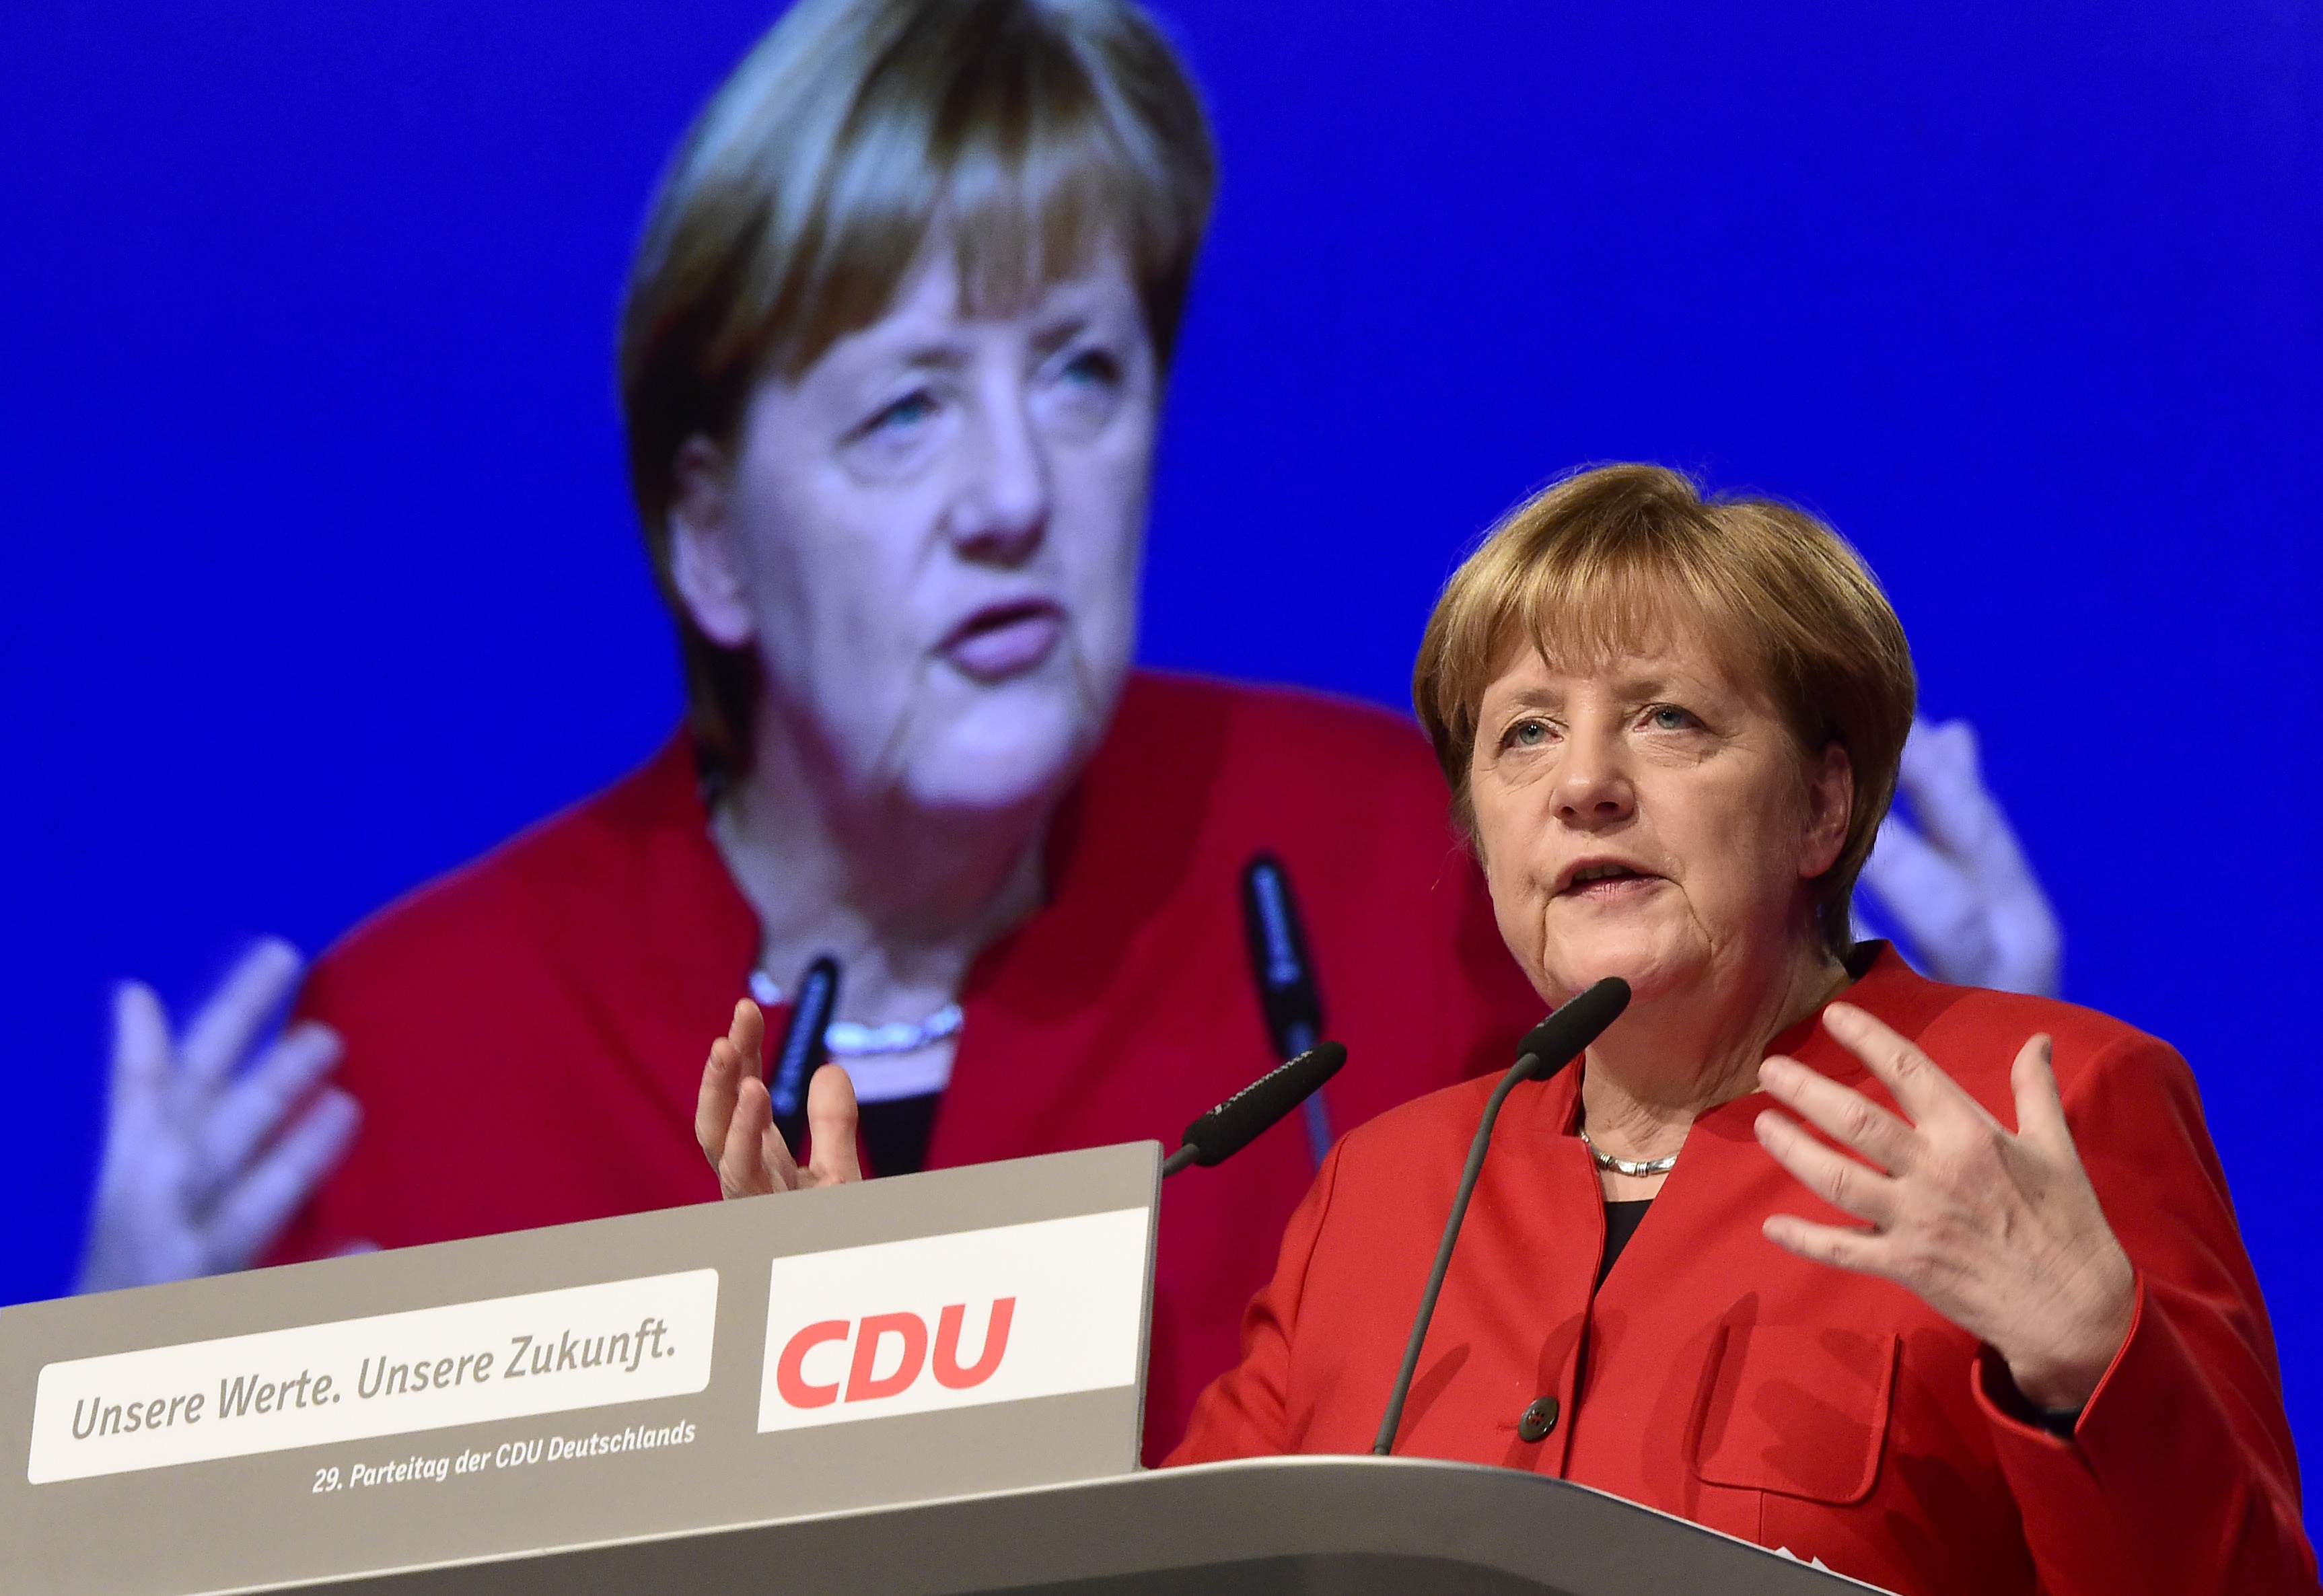 Jahresbilanz der Parteien: CDU verlor 13.000 Mitglieder, Trump half SPD und Linke, AfD gewann